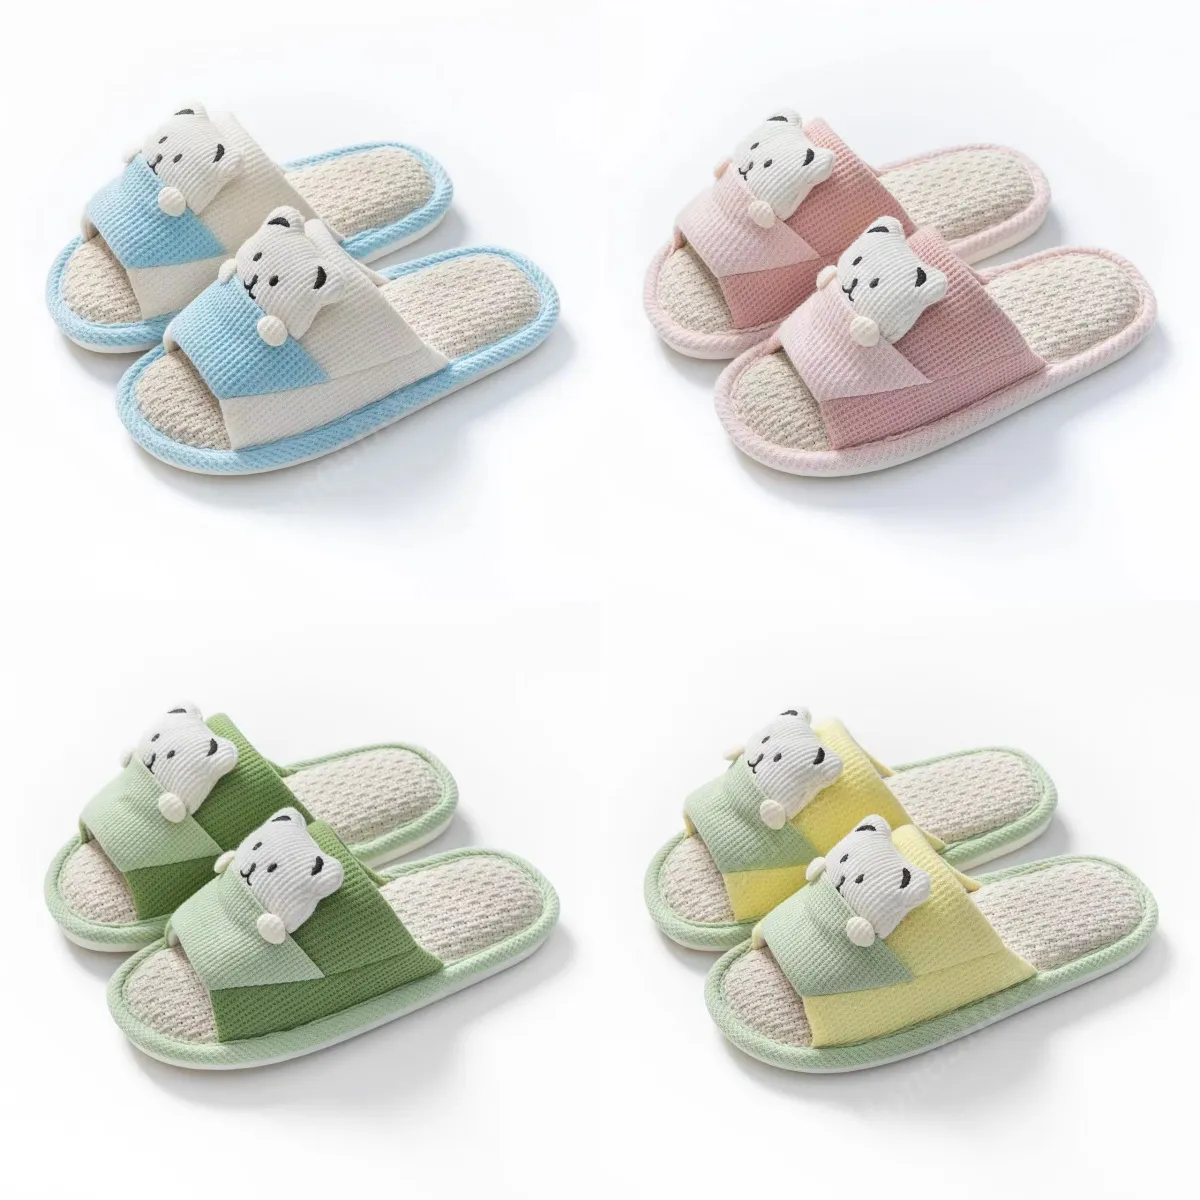 Домашние тапочки летние ботинки в помещении Симпатичные маленькие медвежьи дамы Слип Мягкая не скользящая палуба для ванной комнаты семейные тапочки abcd5